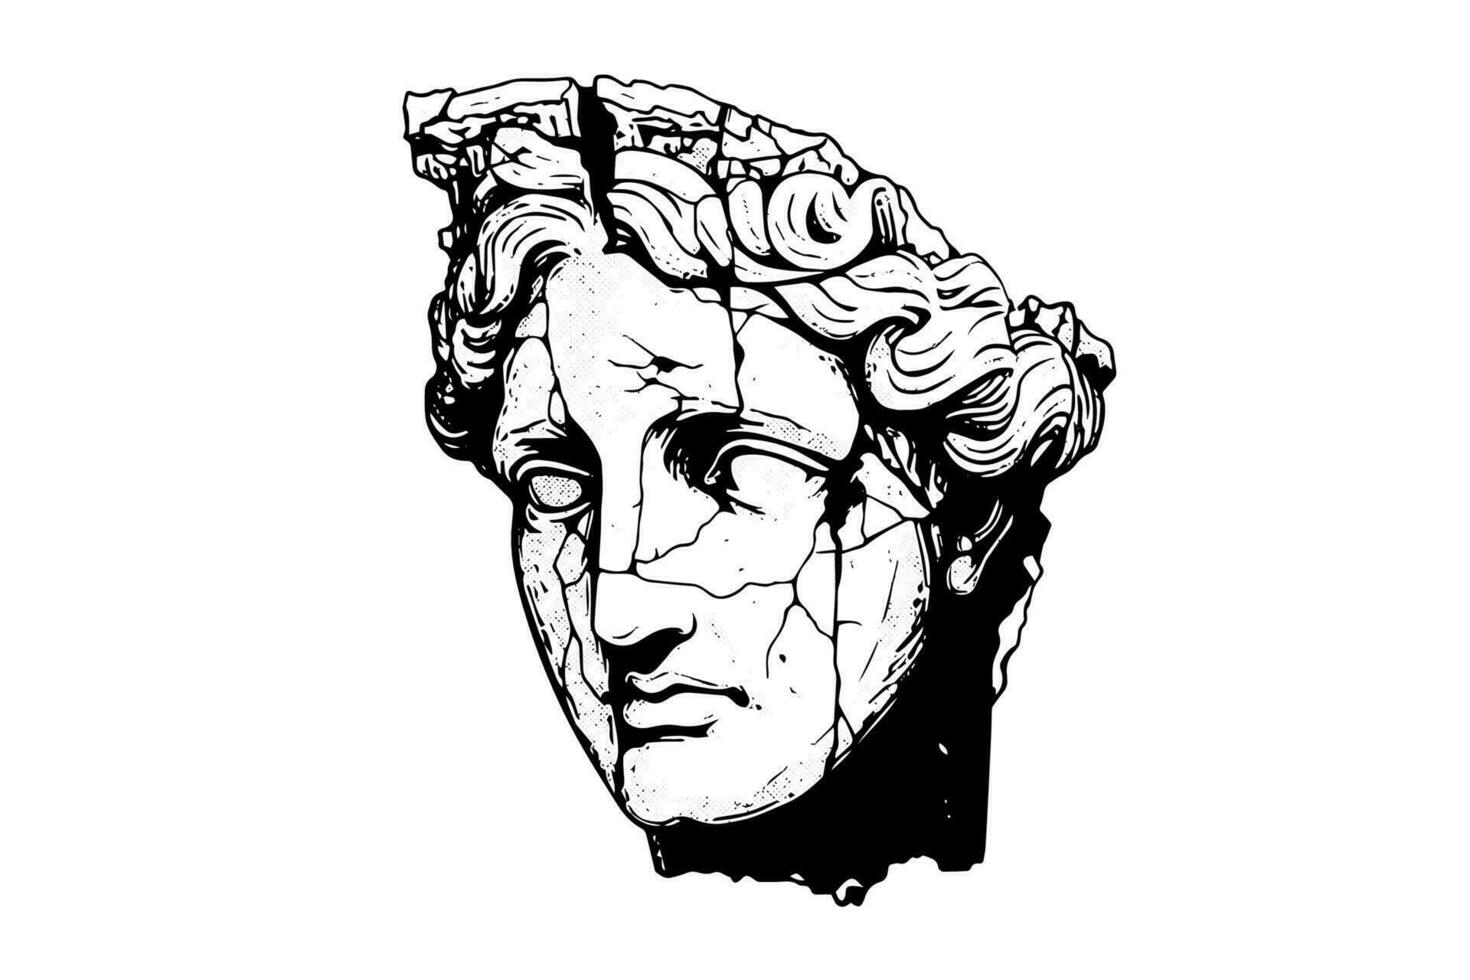 Cracked statua testa di greco scultura schizzo incisione stile vettore illustrazione.